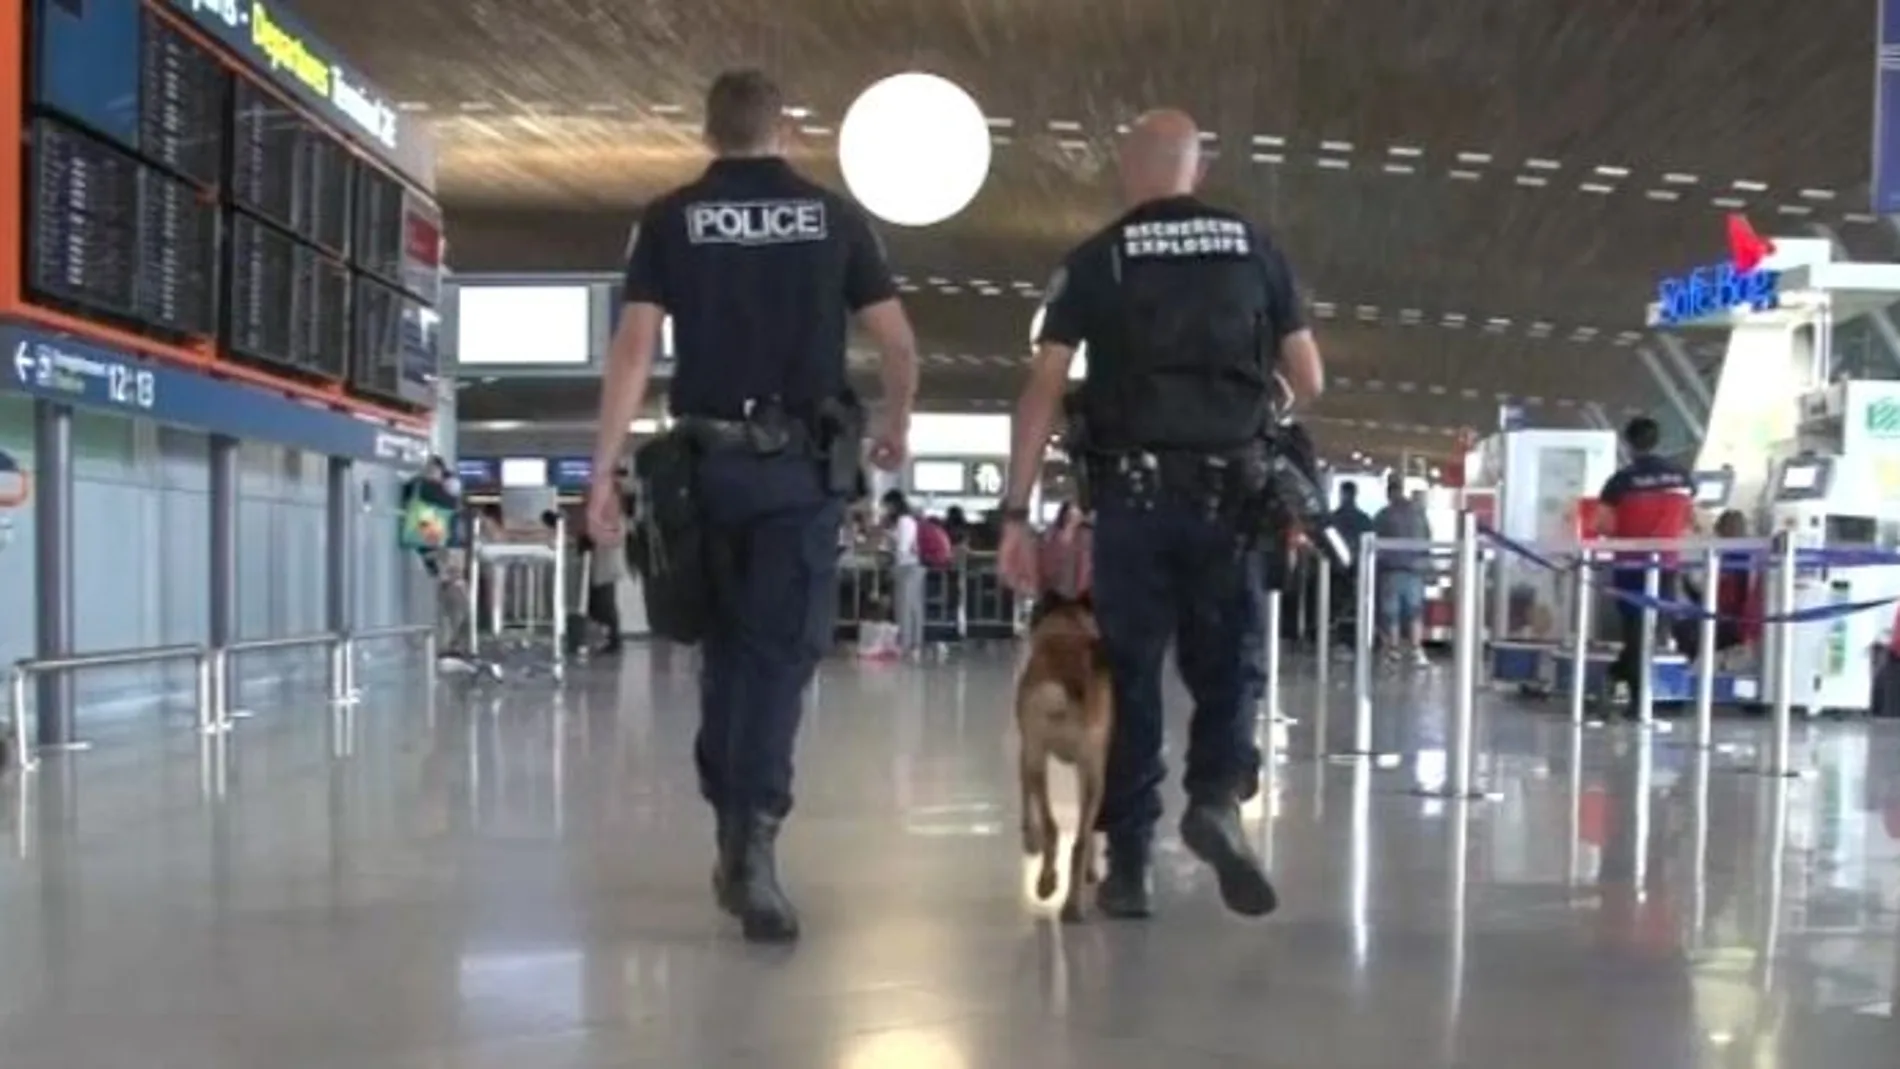 Así cambiaron los atentados del 11-S la forma de viajar y la seguridad en los aeropuertos